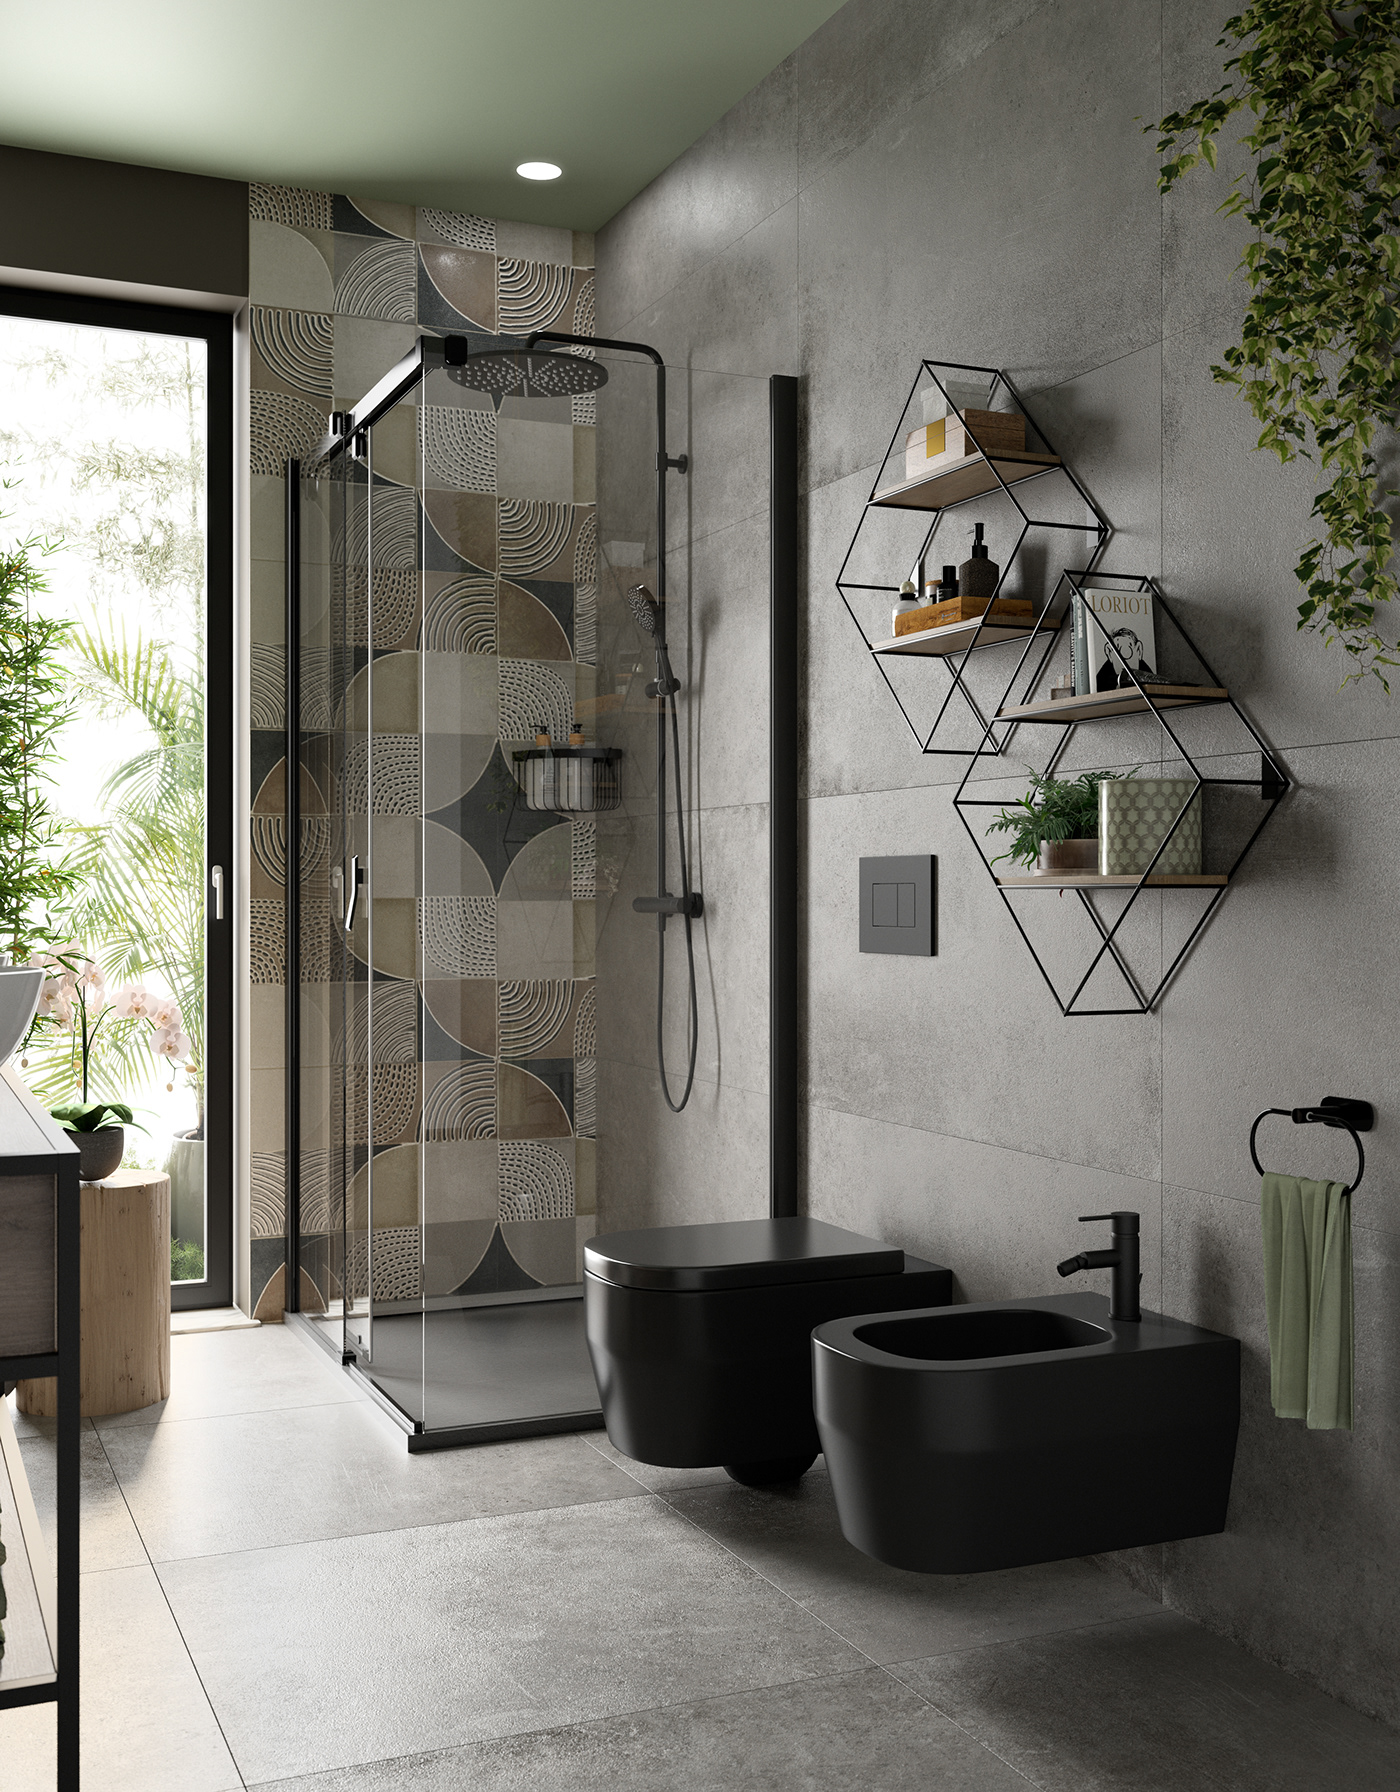 2021 design bathroom bedroom Behance design home inspiration 2021 kitchen maverickrender rendering